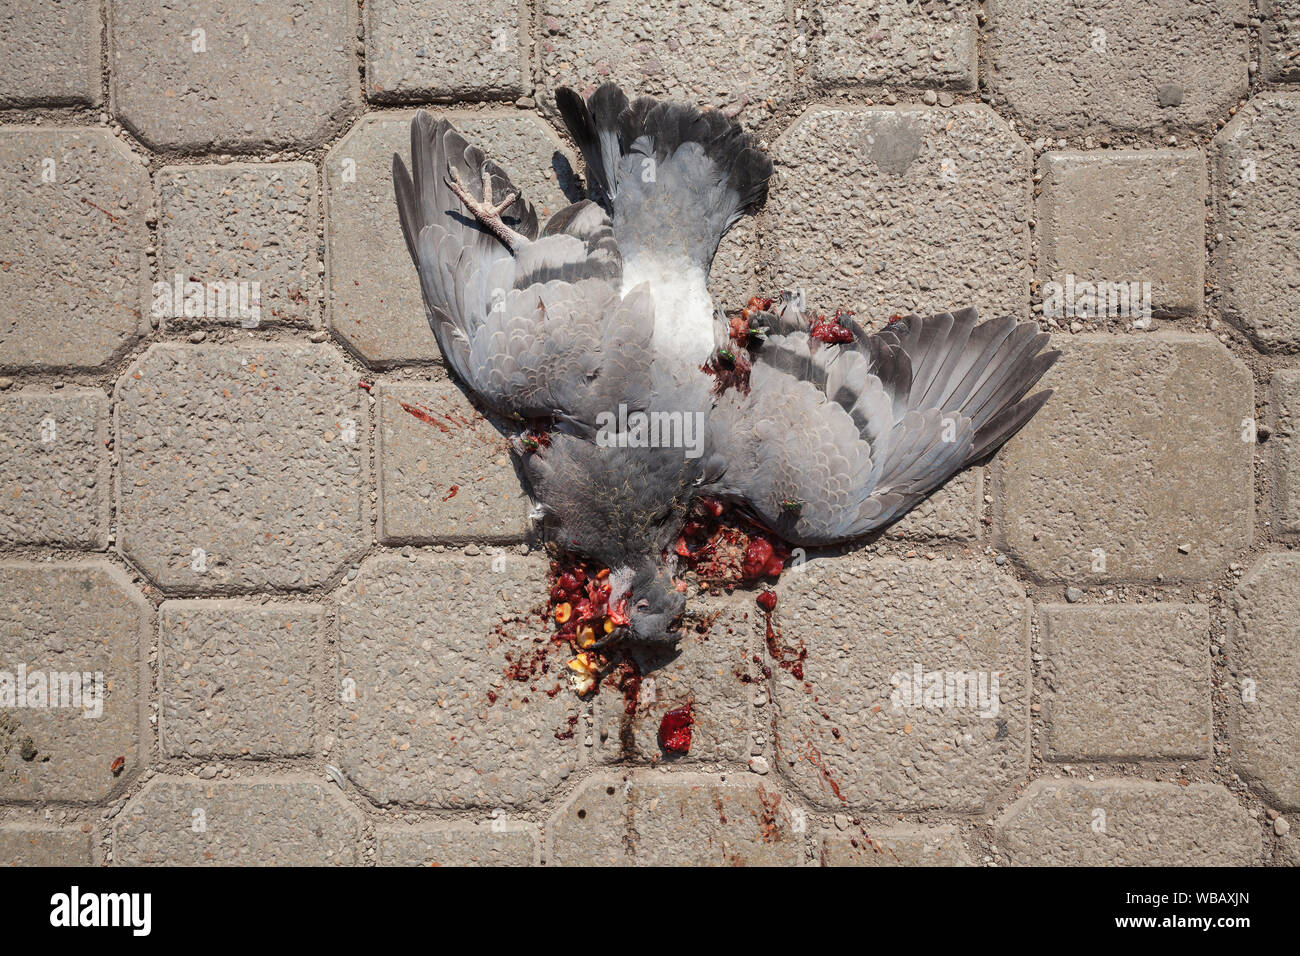 Un pigeon piétinée sur le sol, vue rapprochée. Banque D'Images